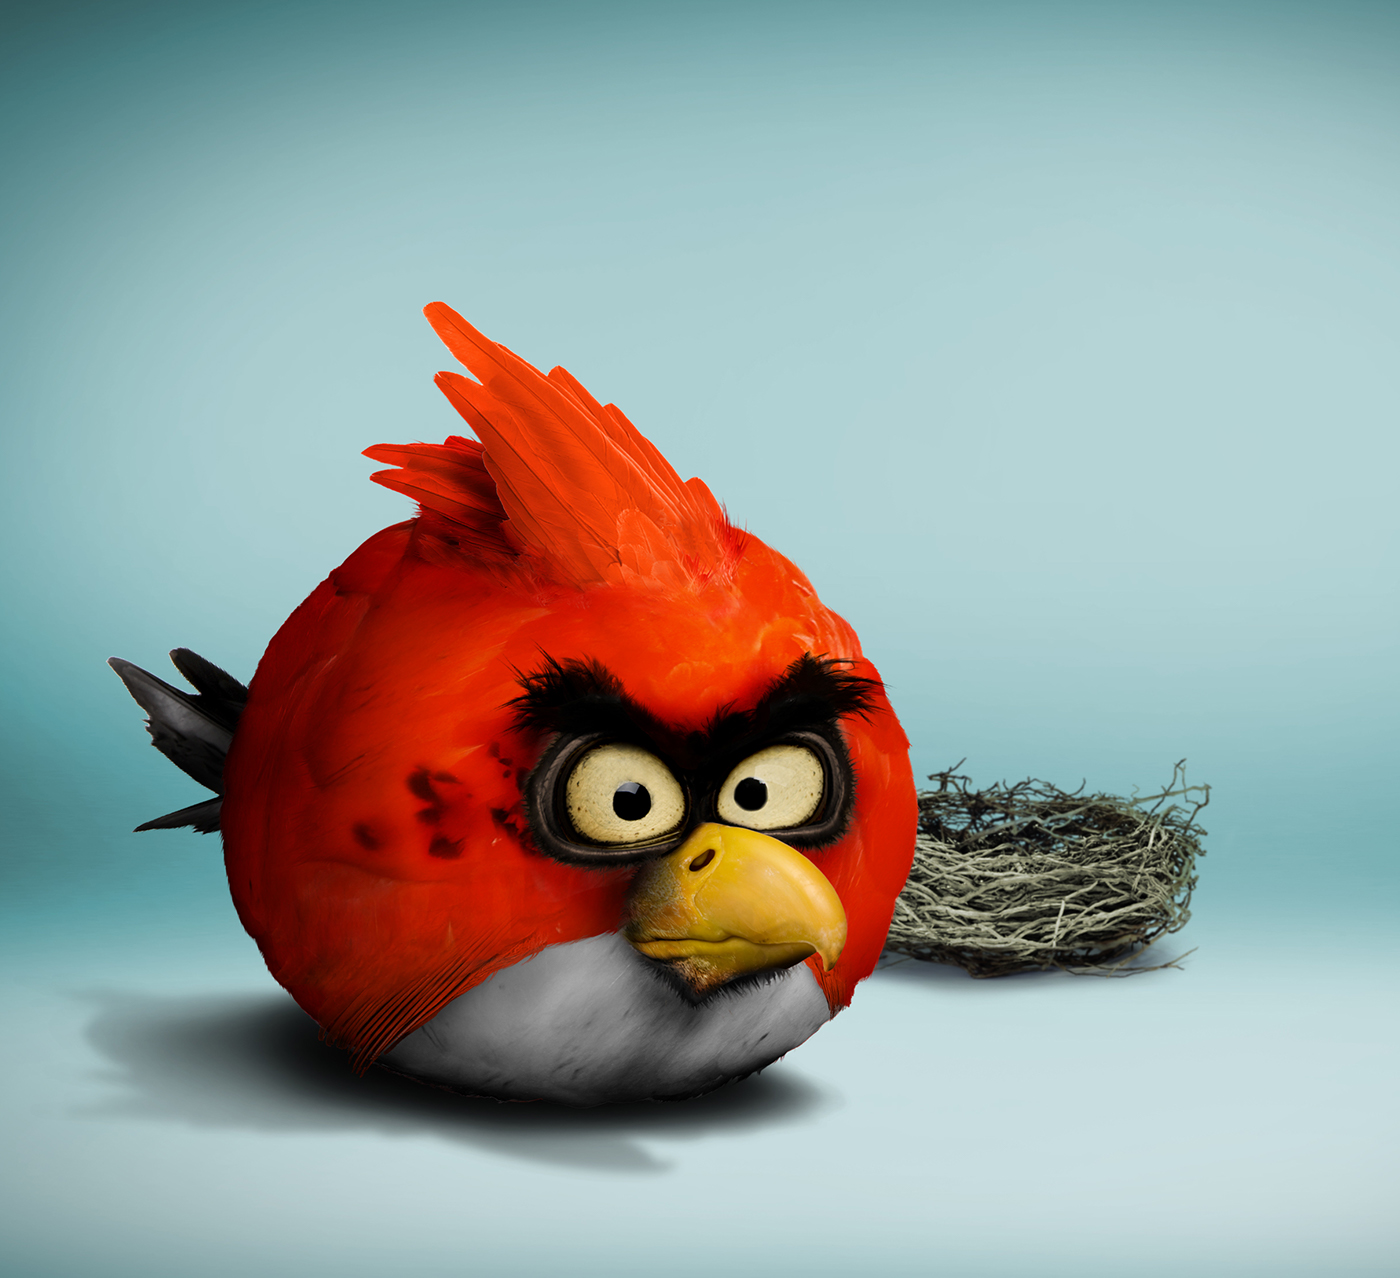 angrybird,angry birds, angry,bird, birds,red,rovio,Ecuador,photoshop,Диза.....